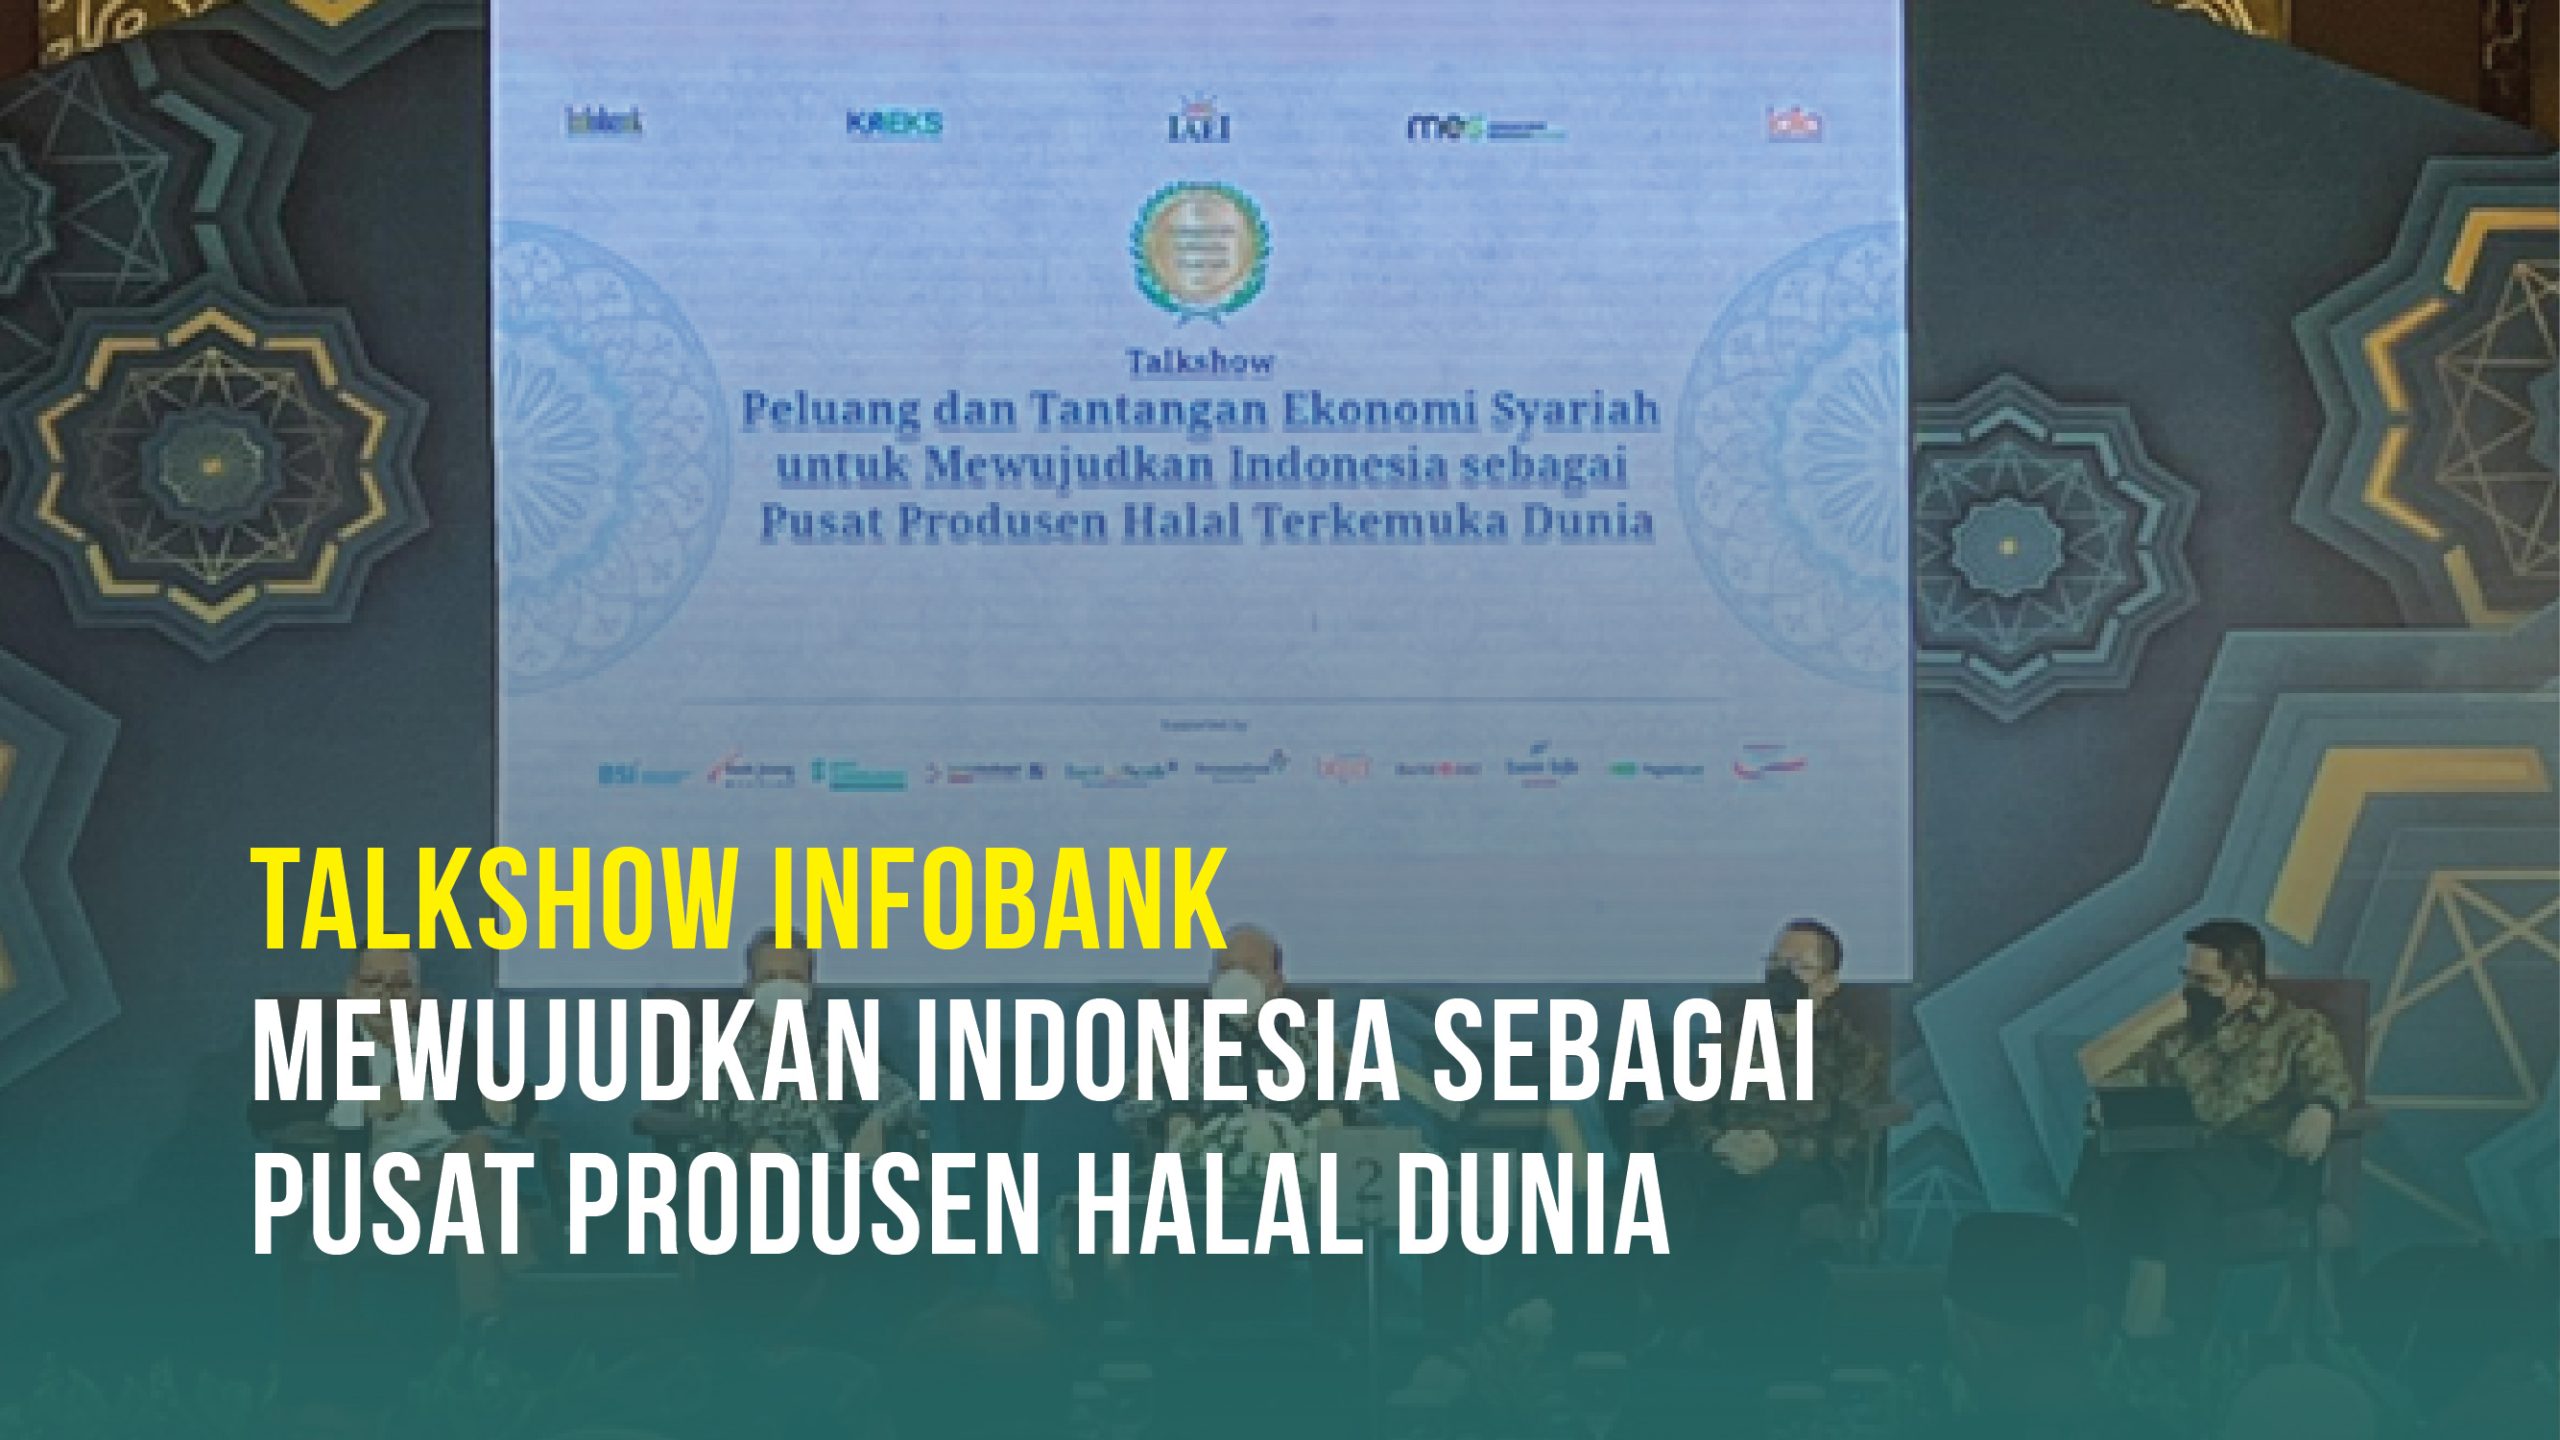 Talkshow Infobank: Mewujudkan Indonesia sebagai Pusat Produsen Halal Dunia